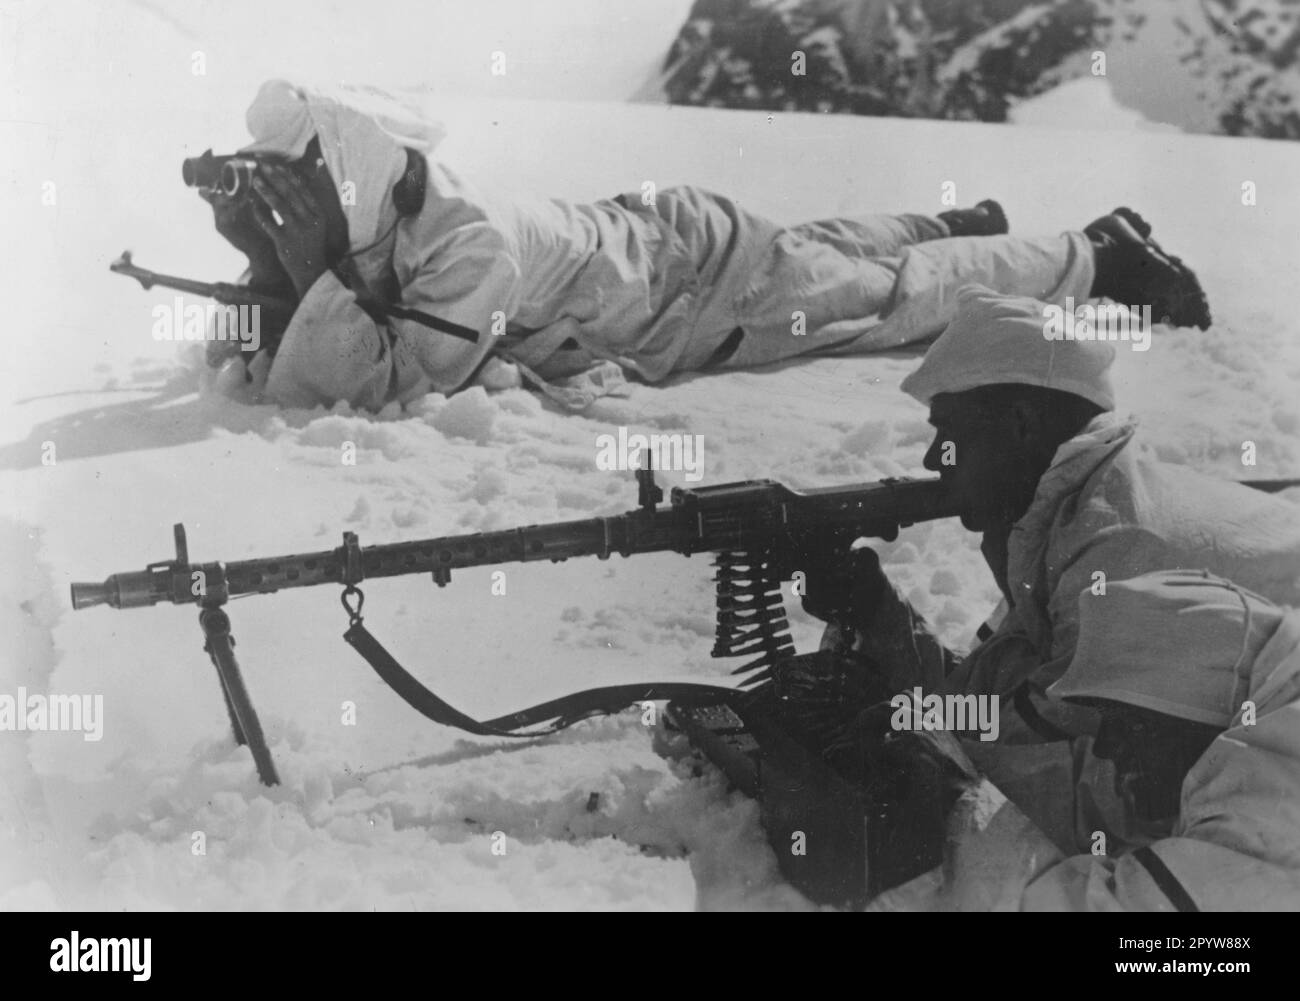 Troupes de montagne avec un MG 34 pendant le combat dans les hautes montagnes. Photo: Rieder. [traduction automatique] Banque D'Images